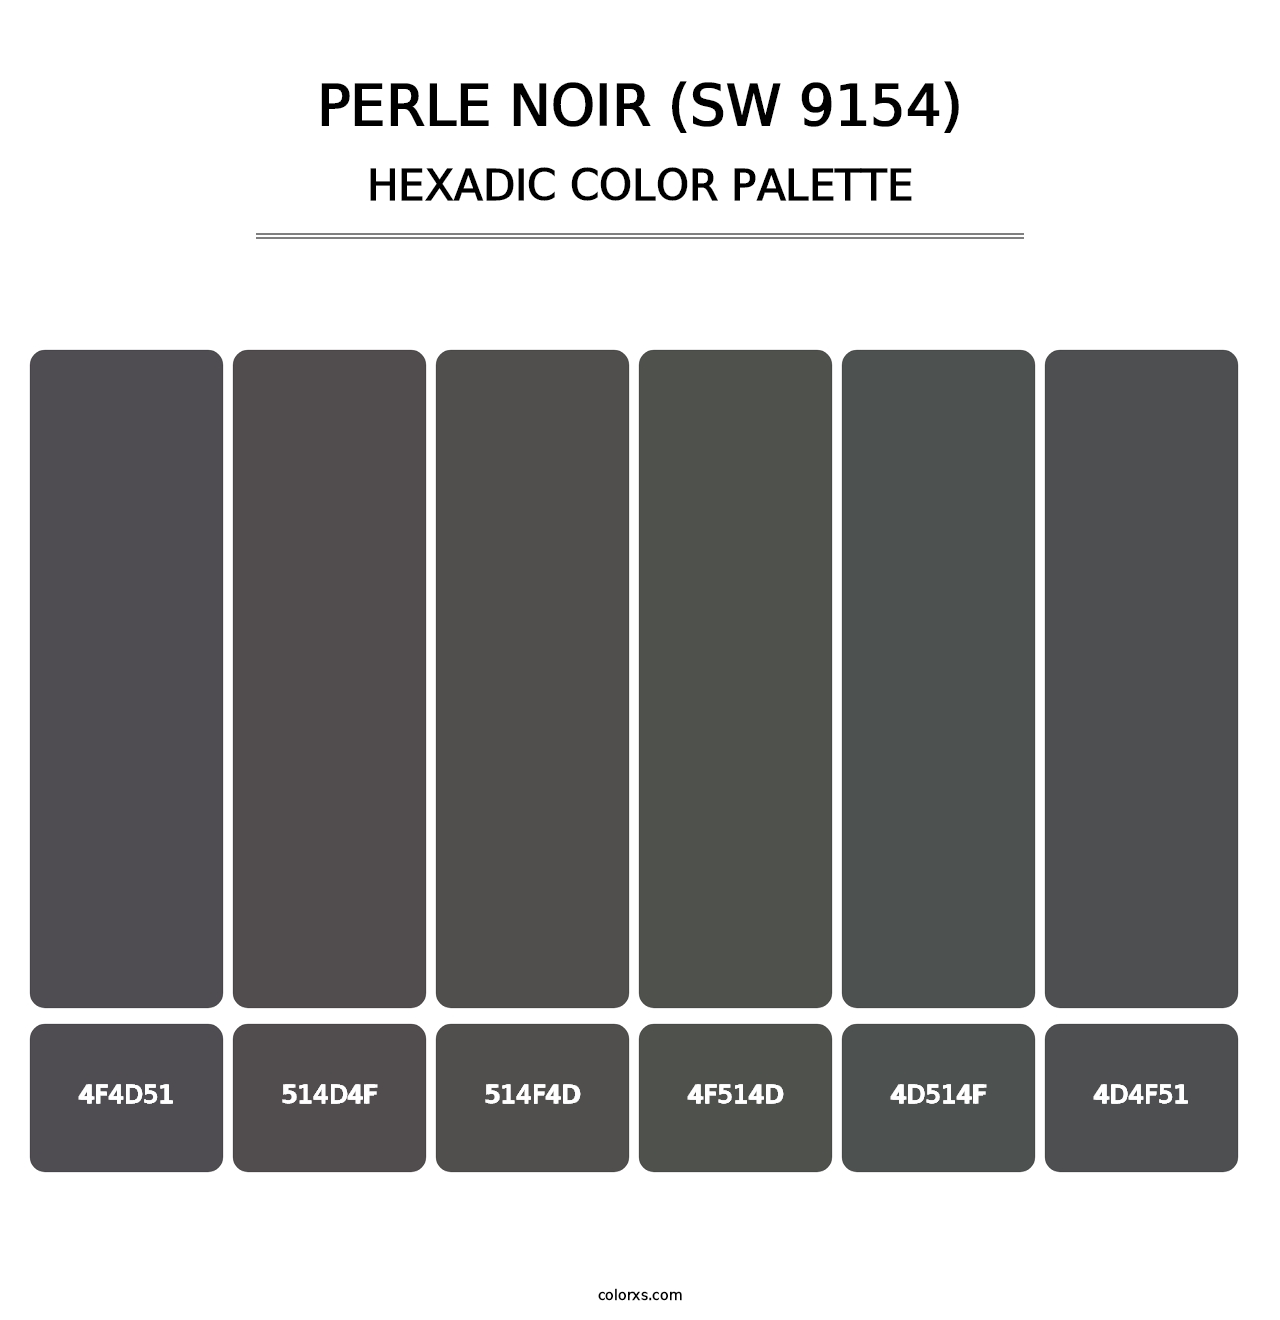 Perle Noir (SW 9154) - Hexadic Color Palette